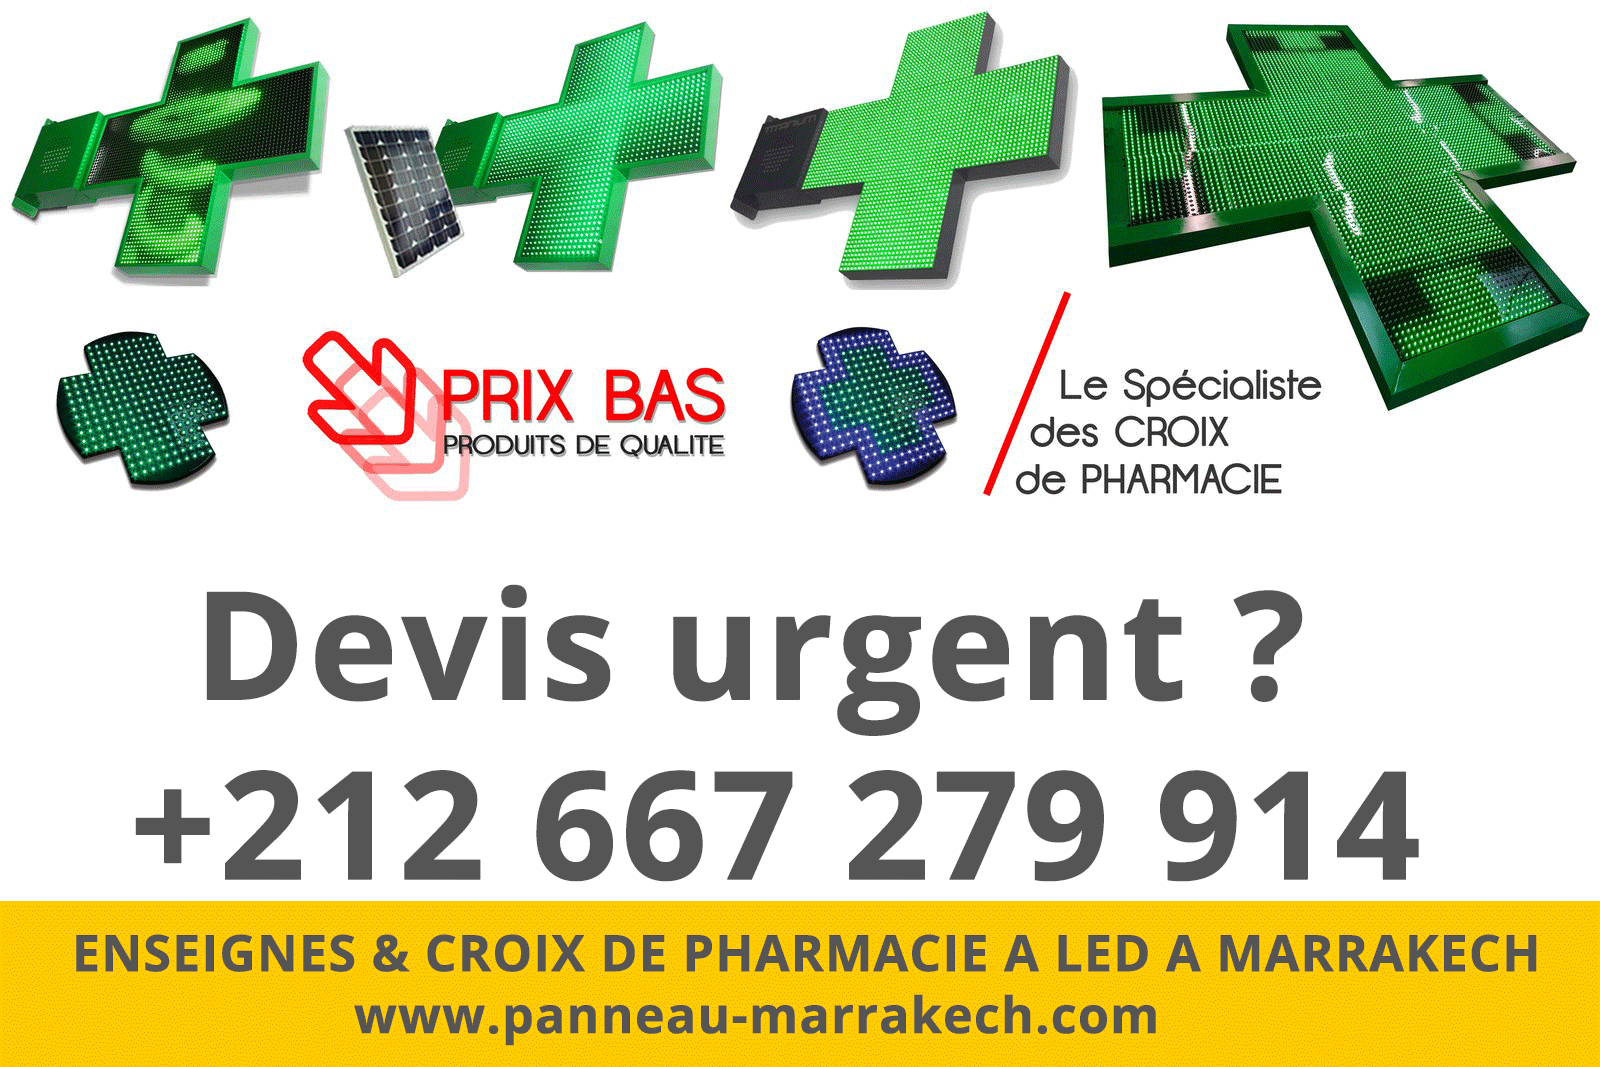 ENSEIGNES & CROIX DE PHARMACIE A LED A MARRAKECH habillage facade pharmacie marrakech